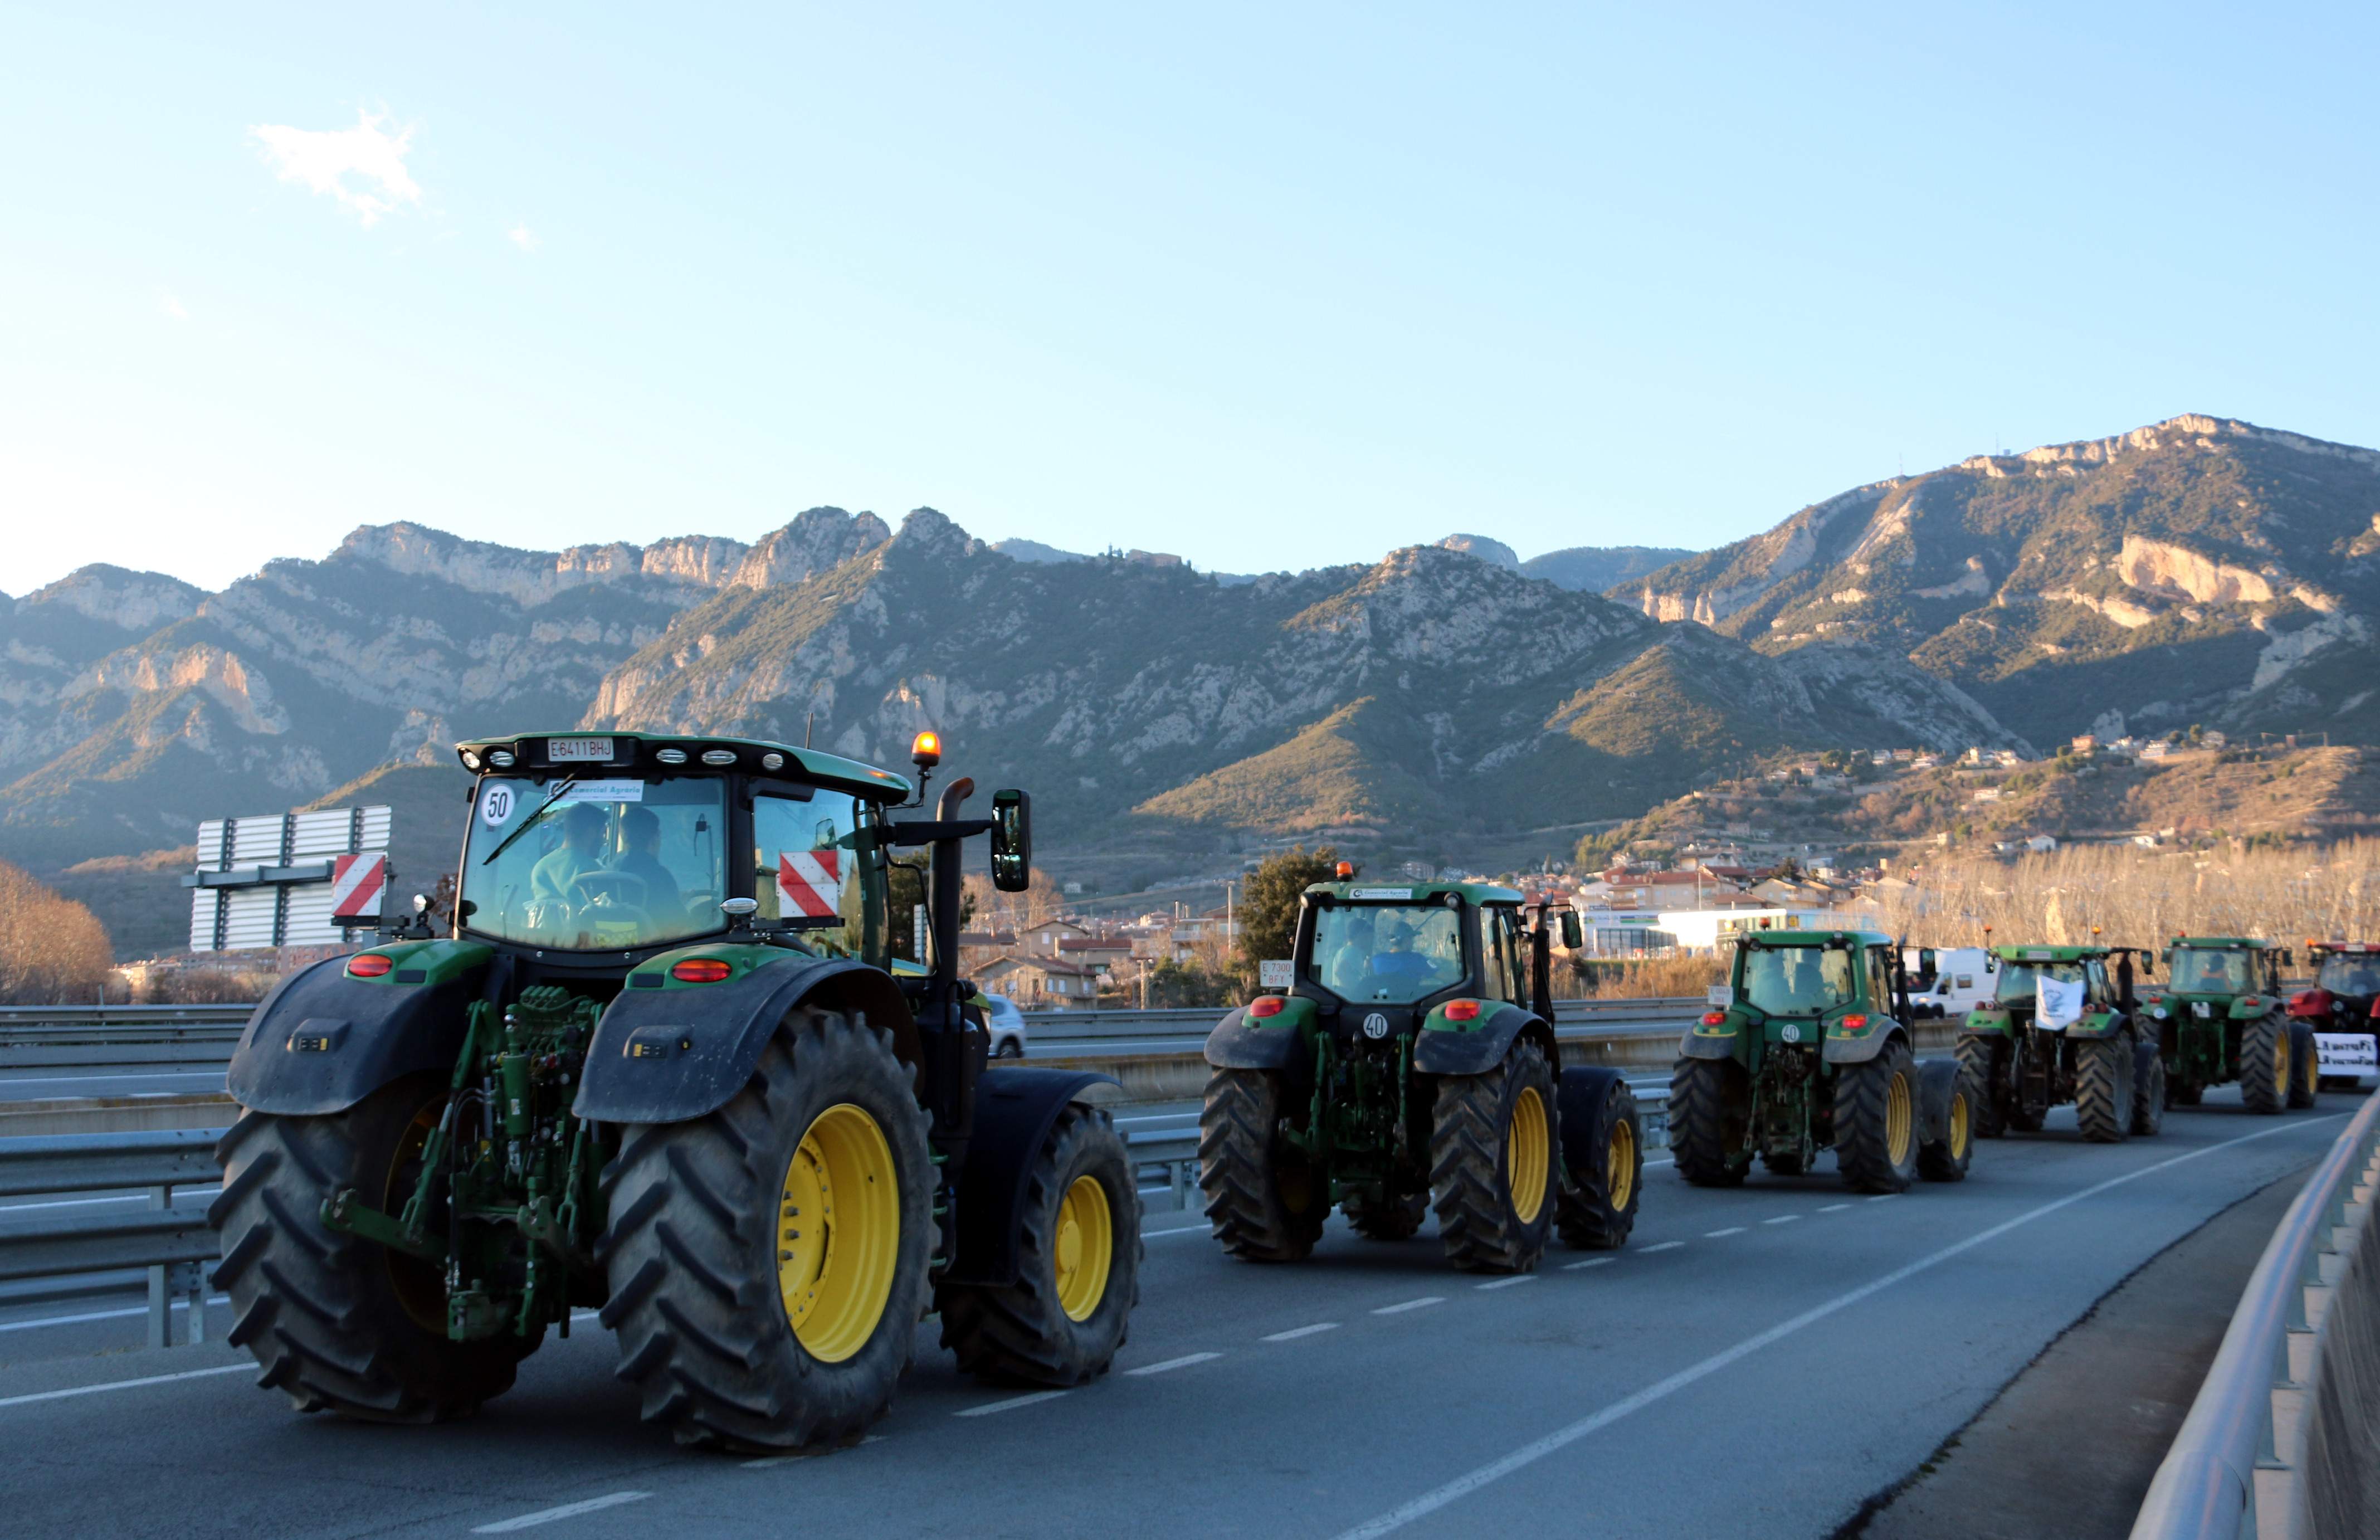 Els pagesos compliquen l'operació tornada: marxes lentes al Berguedà i l'Urgell